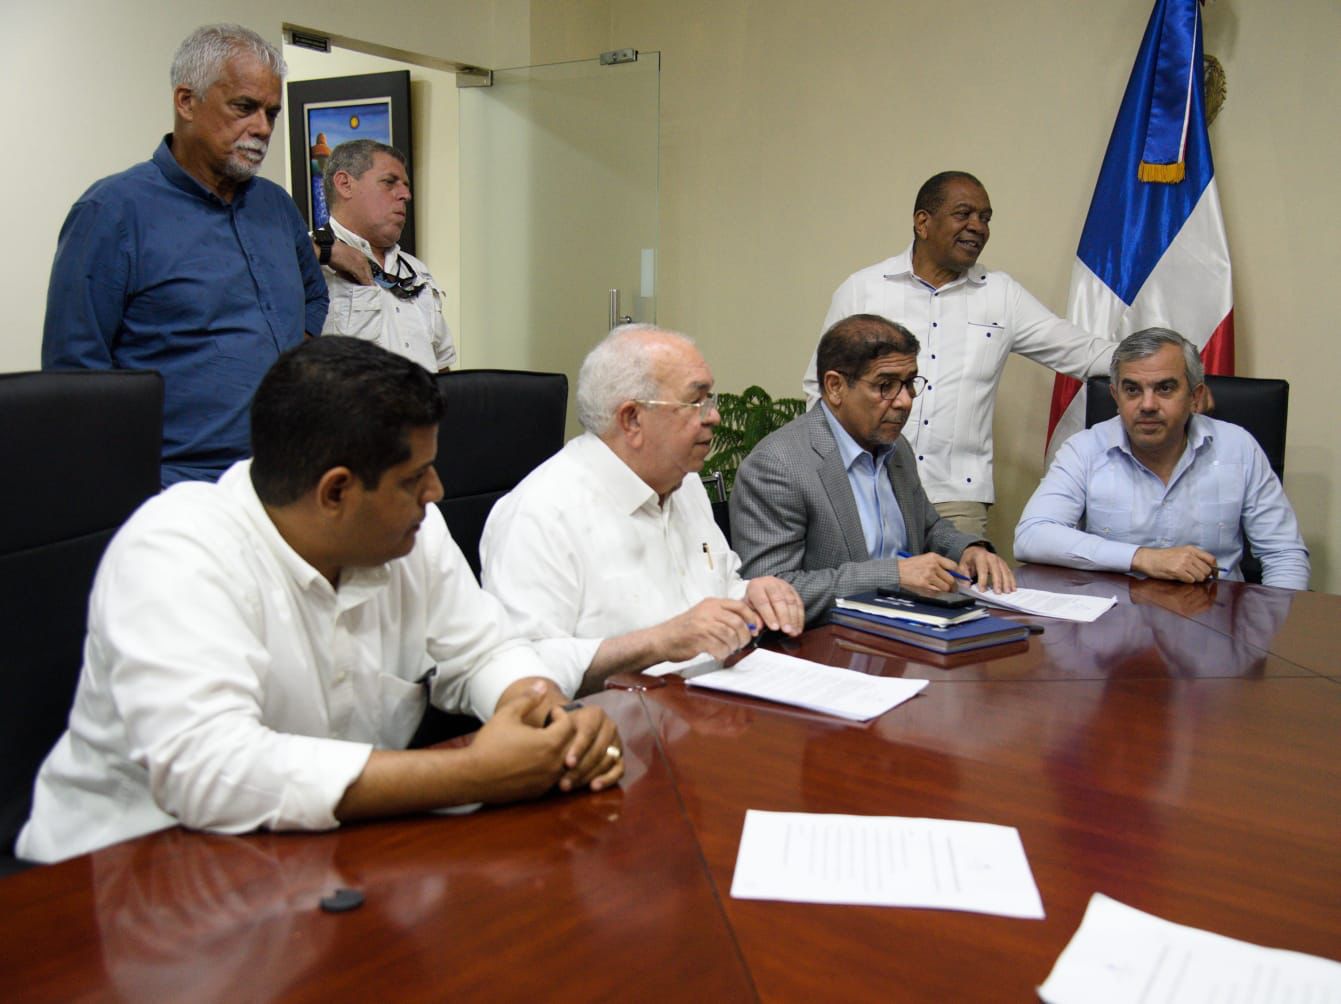 Comisión Arrocera y gobierno dominicano acuerdan banda de precio del arroz sin afectar consumidor